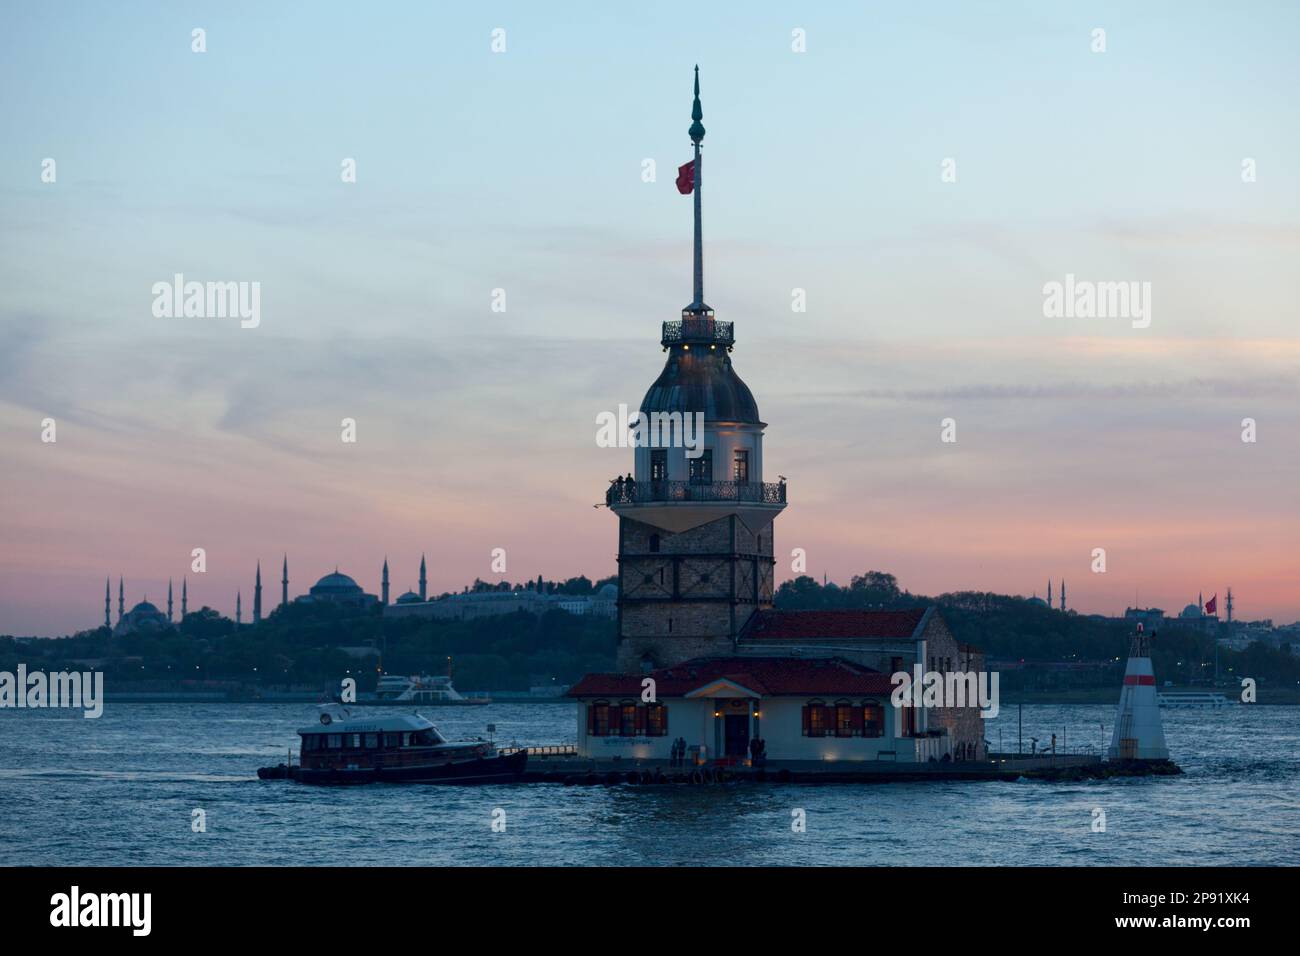 Istanbul, Türkei - Mai 12 2019: Der Jungfrauenturm, auch bekannt als Leander's Tower seit der mittelalterlichen byzantinischen Zeit, ist ein Turm, der auf einer kleinen isl liegt Stockfoto